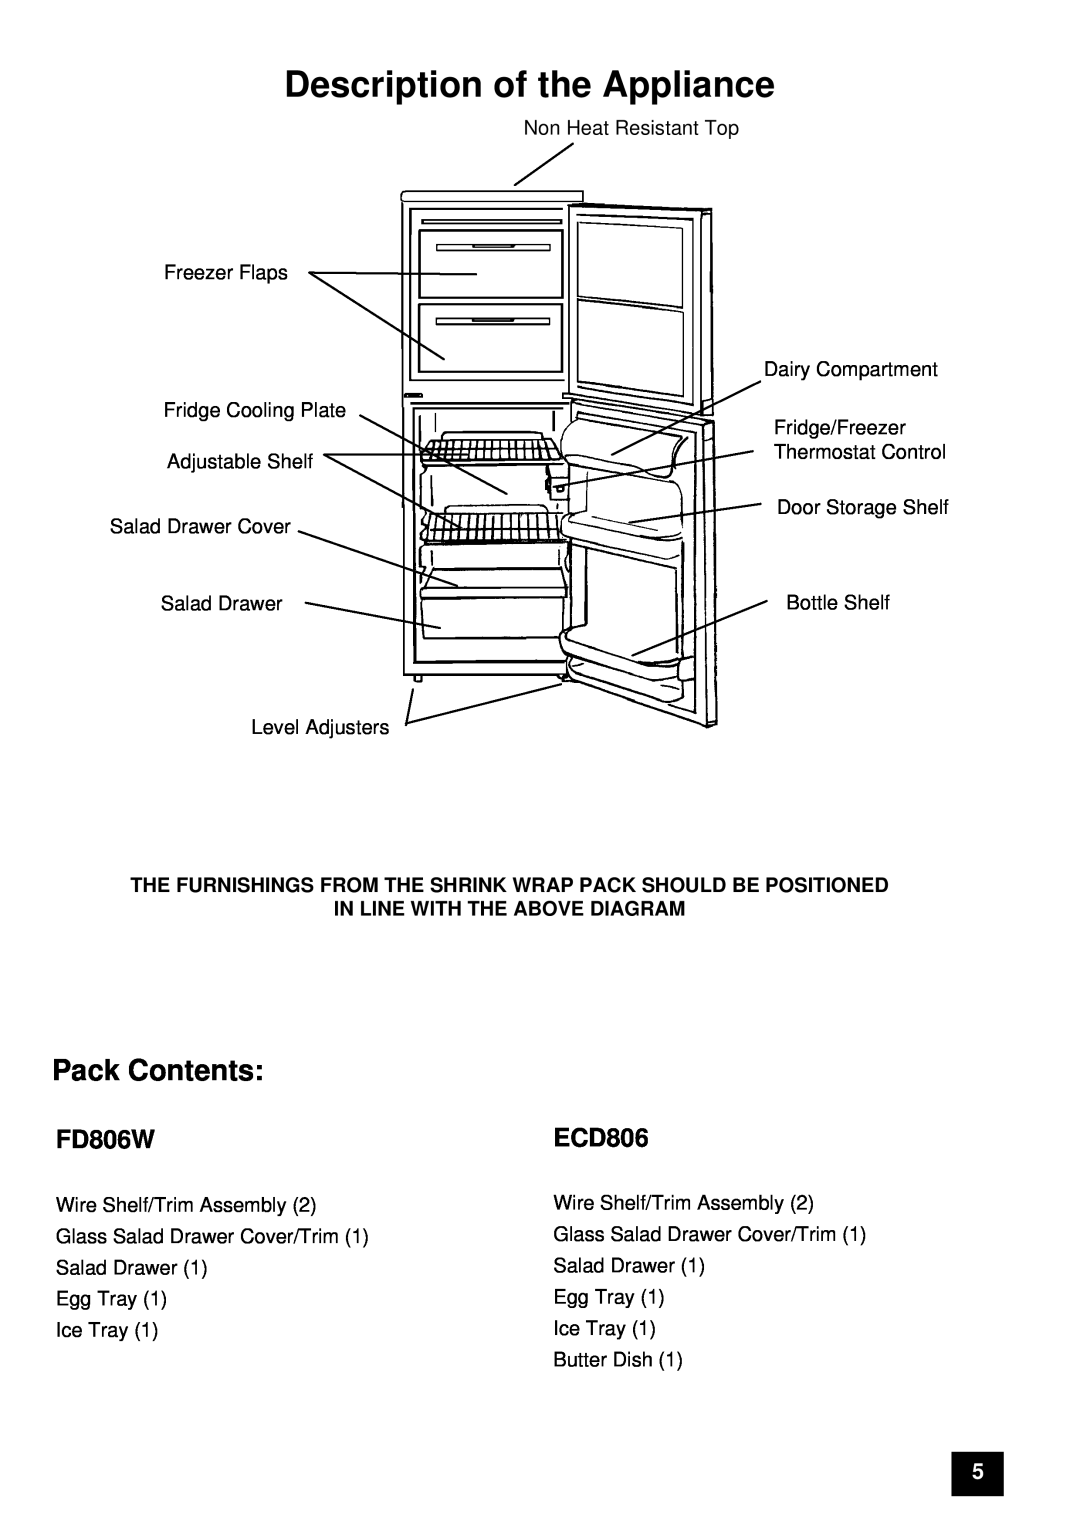 Tricity Bendix ECD806, FD806W instruction manual Description of the Appliance, Pack Contents 